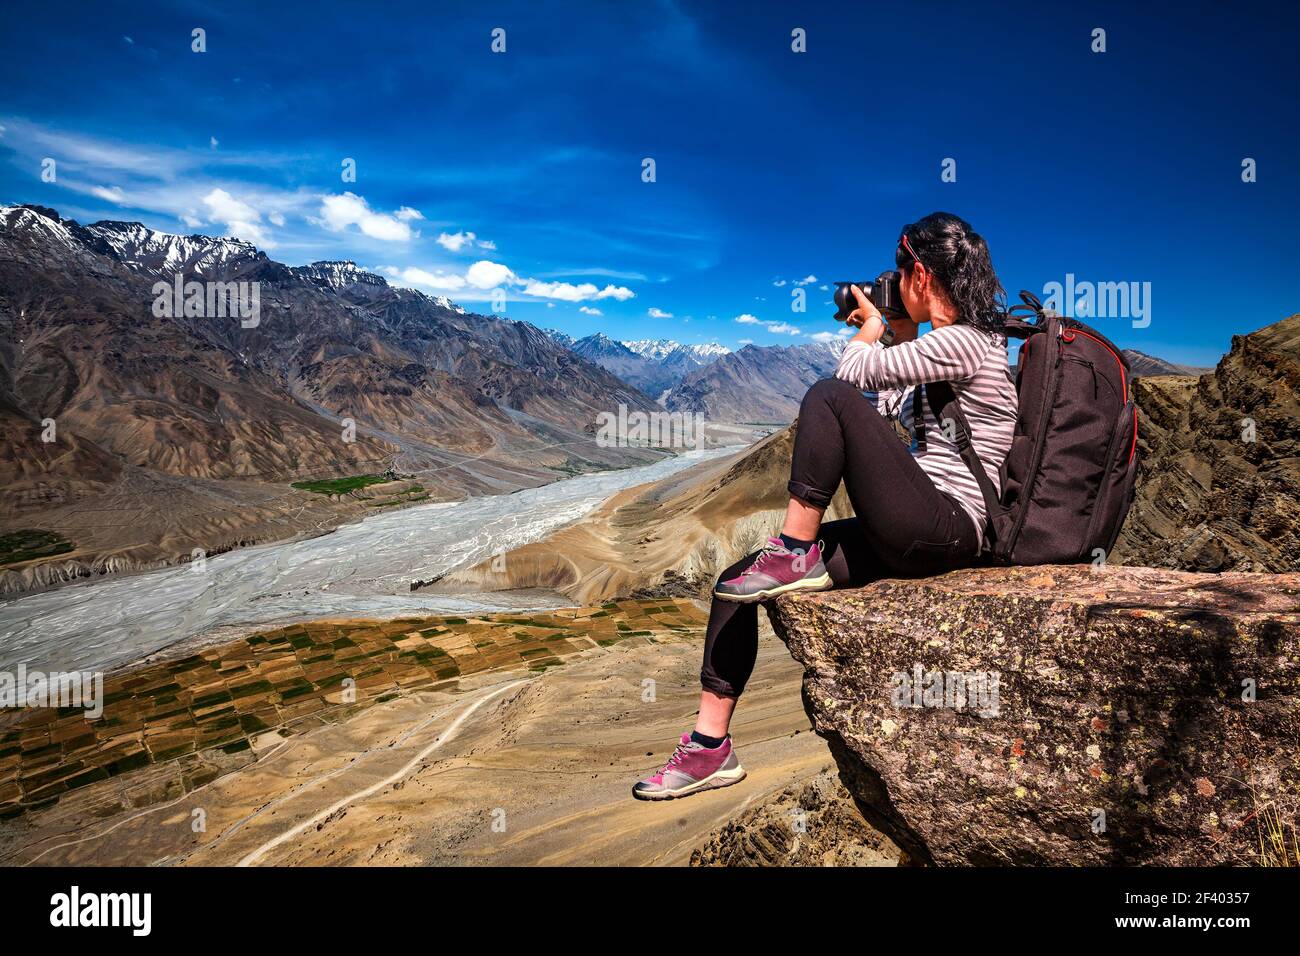 Dhankar Gompa. India. Valle di Spiti. Dhankar gompa. Valle di Spiti, Himachal Pradesh, India. Fotografo turistico della natura con riprese fotografiche in piedi sulla cima della montagna. Foto Stock